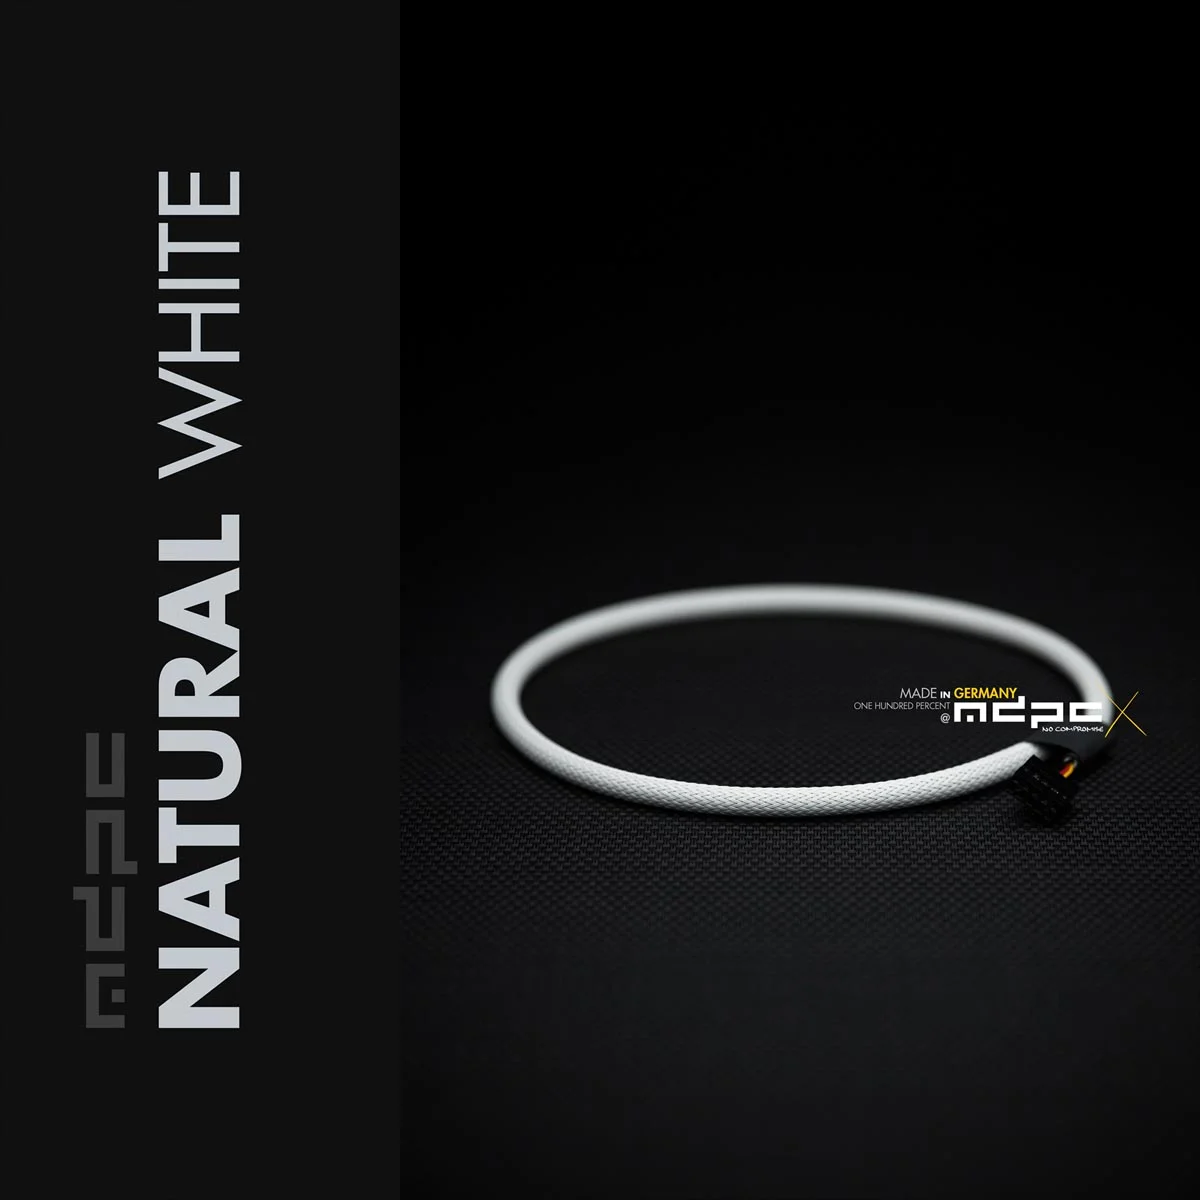 สายถัก Front-Panal-MDPC-x natural white cable sleeving